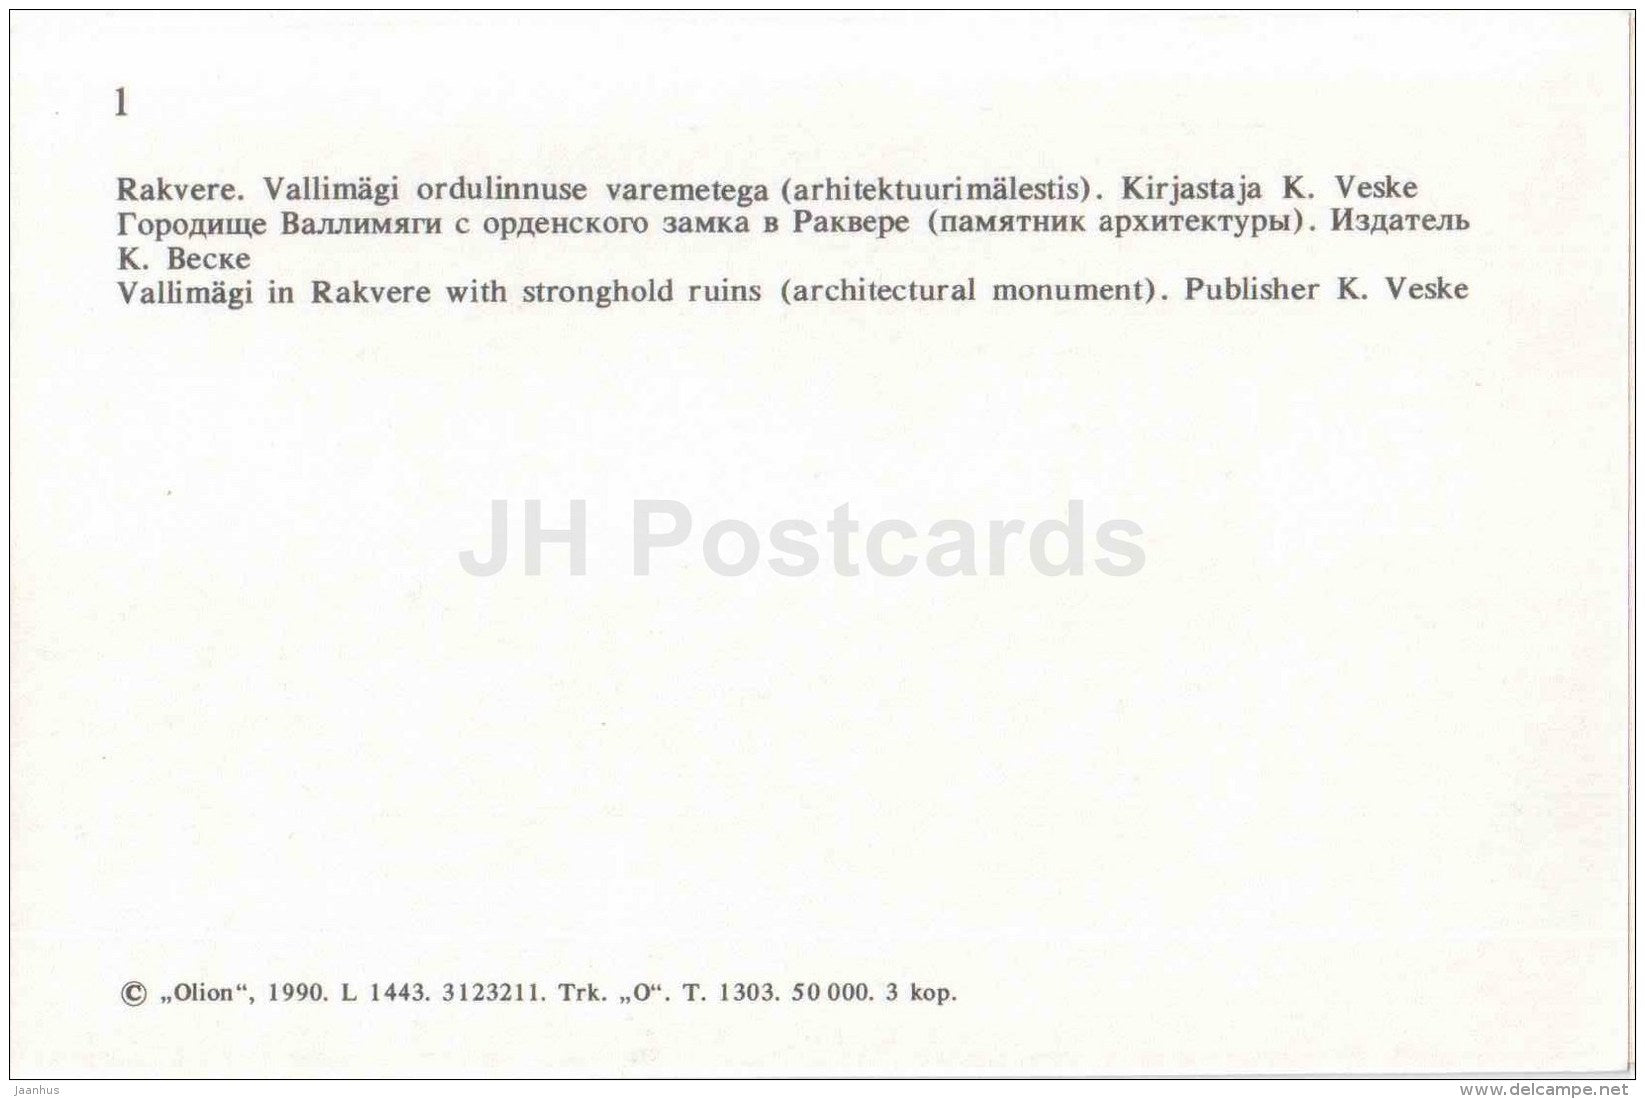 Vallimägi in Rakvere - castle ruins - Wesenberg - Virumaa - OLD POSTCARD REPRODUCTION! - 1990 - Estonia USSR - unused - JH Postcards